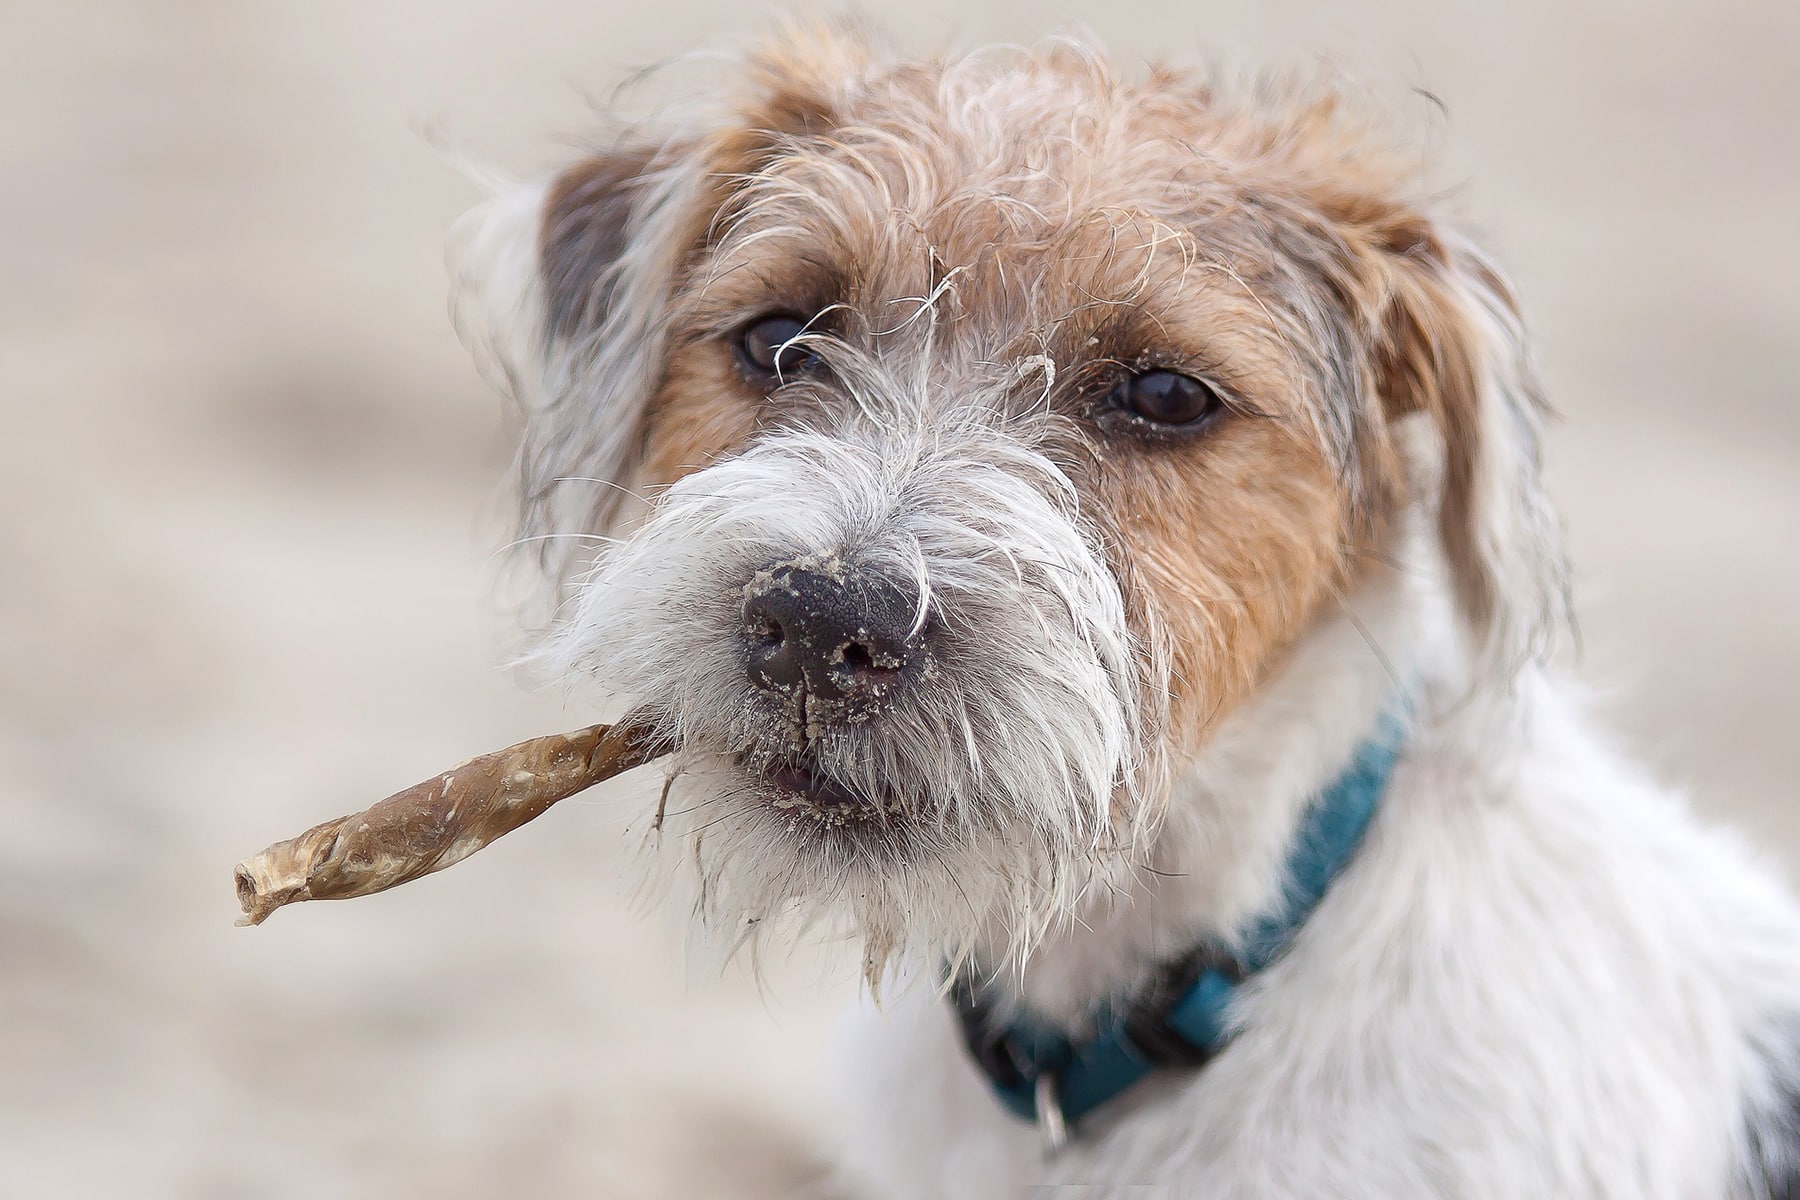 Parson Russell Terrier portrait